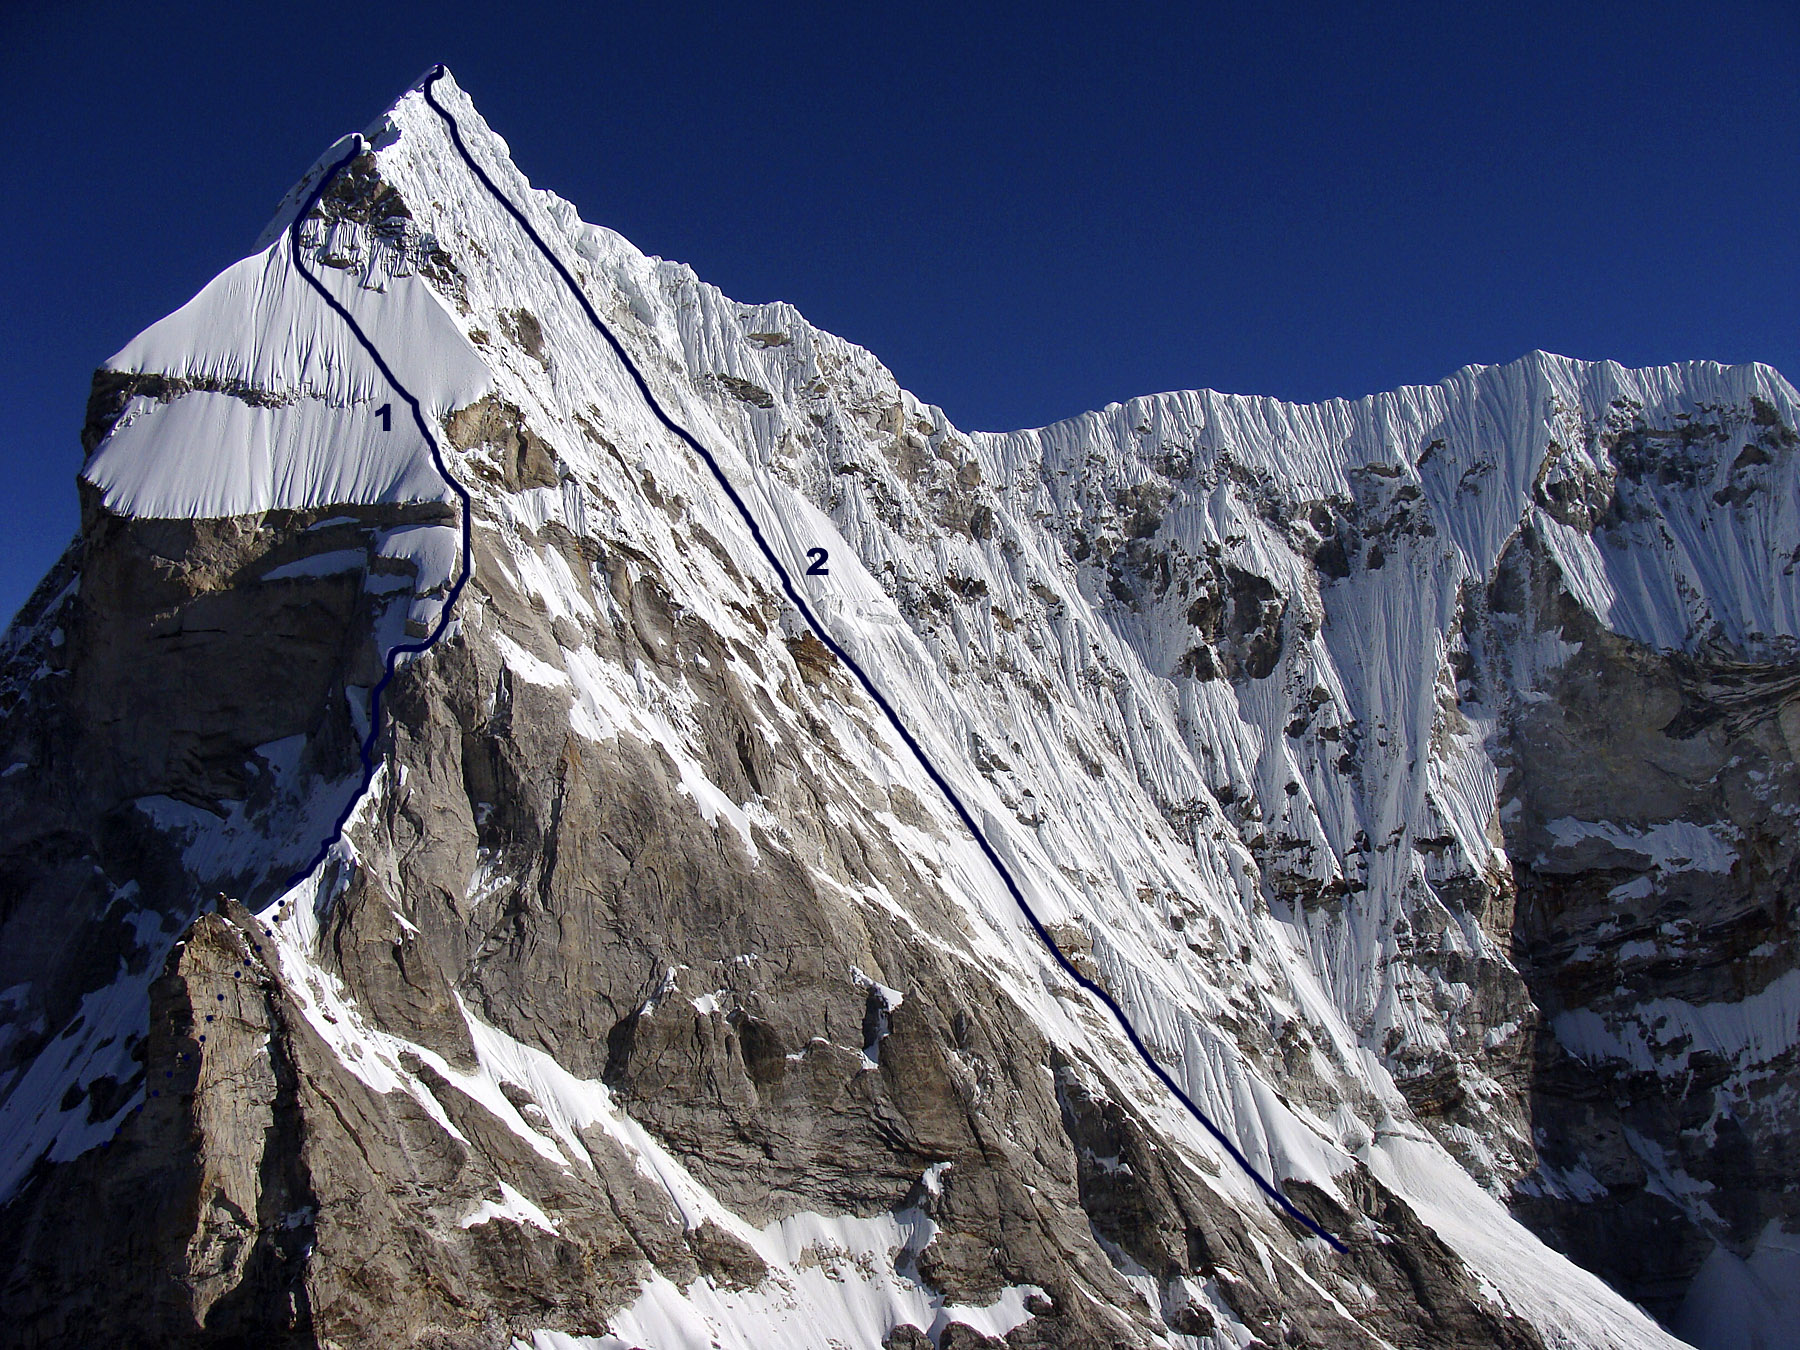 Южная стена пика Tengi Ragi Tau (6938 м). Маршрут №1 - попытка 2009 года. Маршрут №2 - первопрохождение японской команды в 2002 году